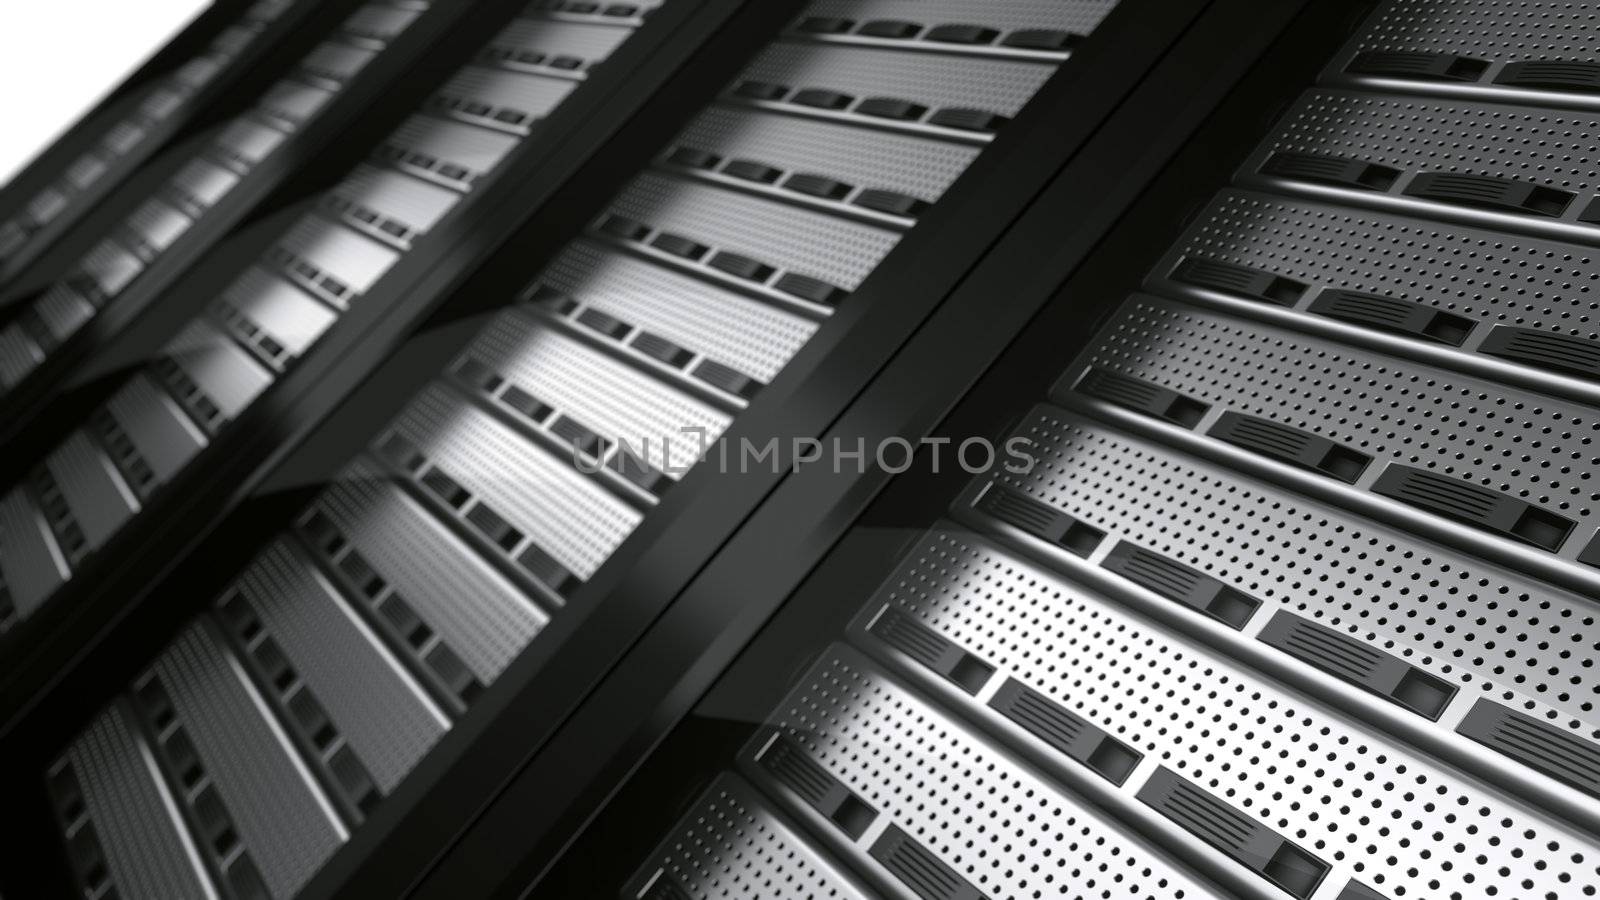 3d rendering of multiple rack servers